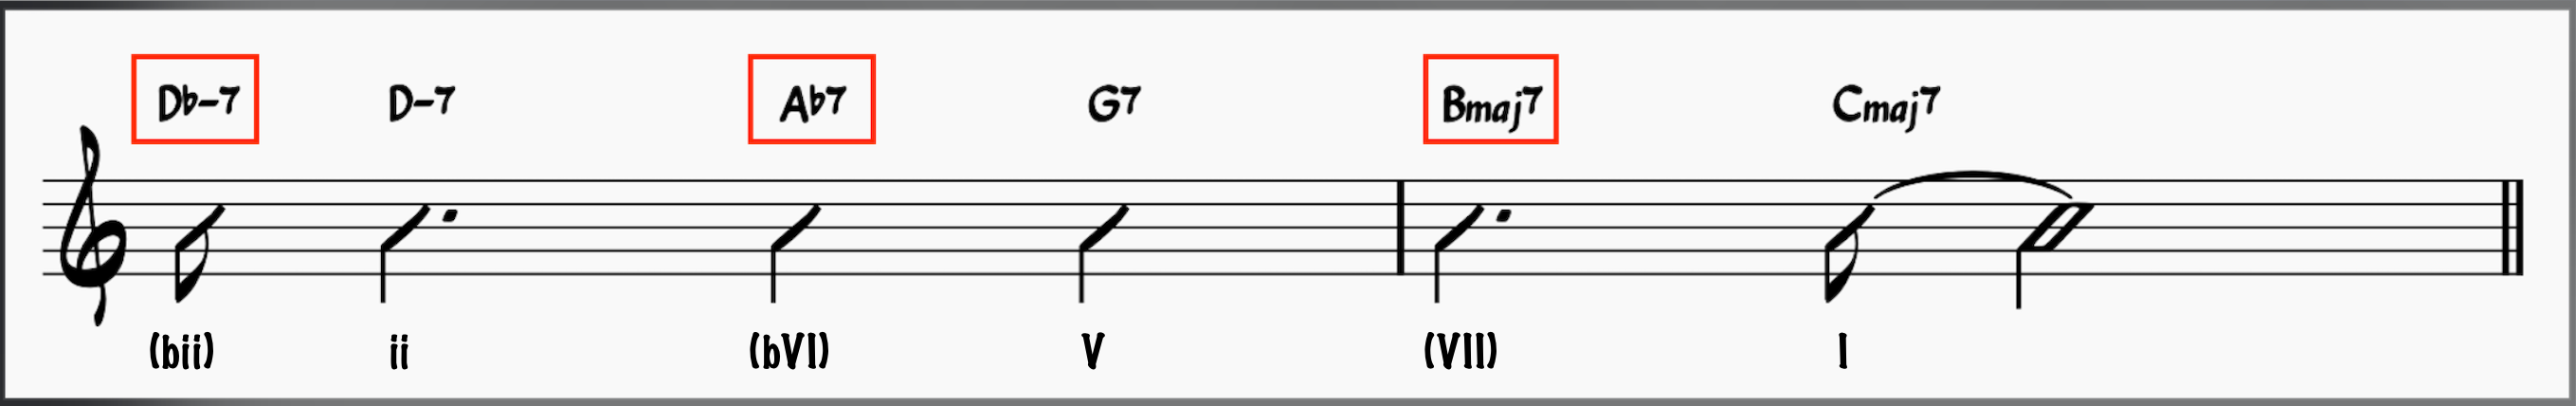 Chromatic appoach chords used in a ii-V-I